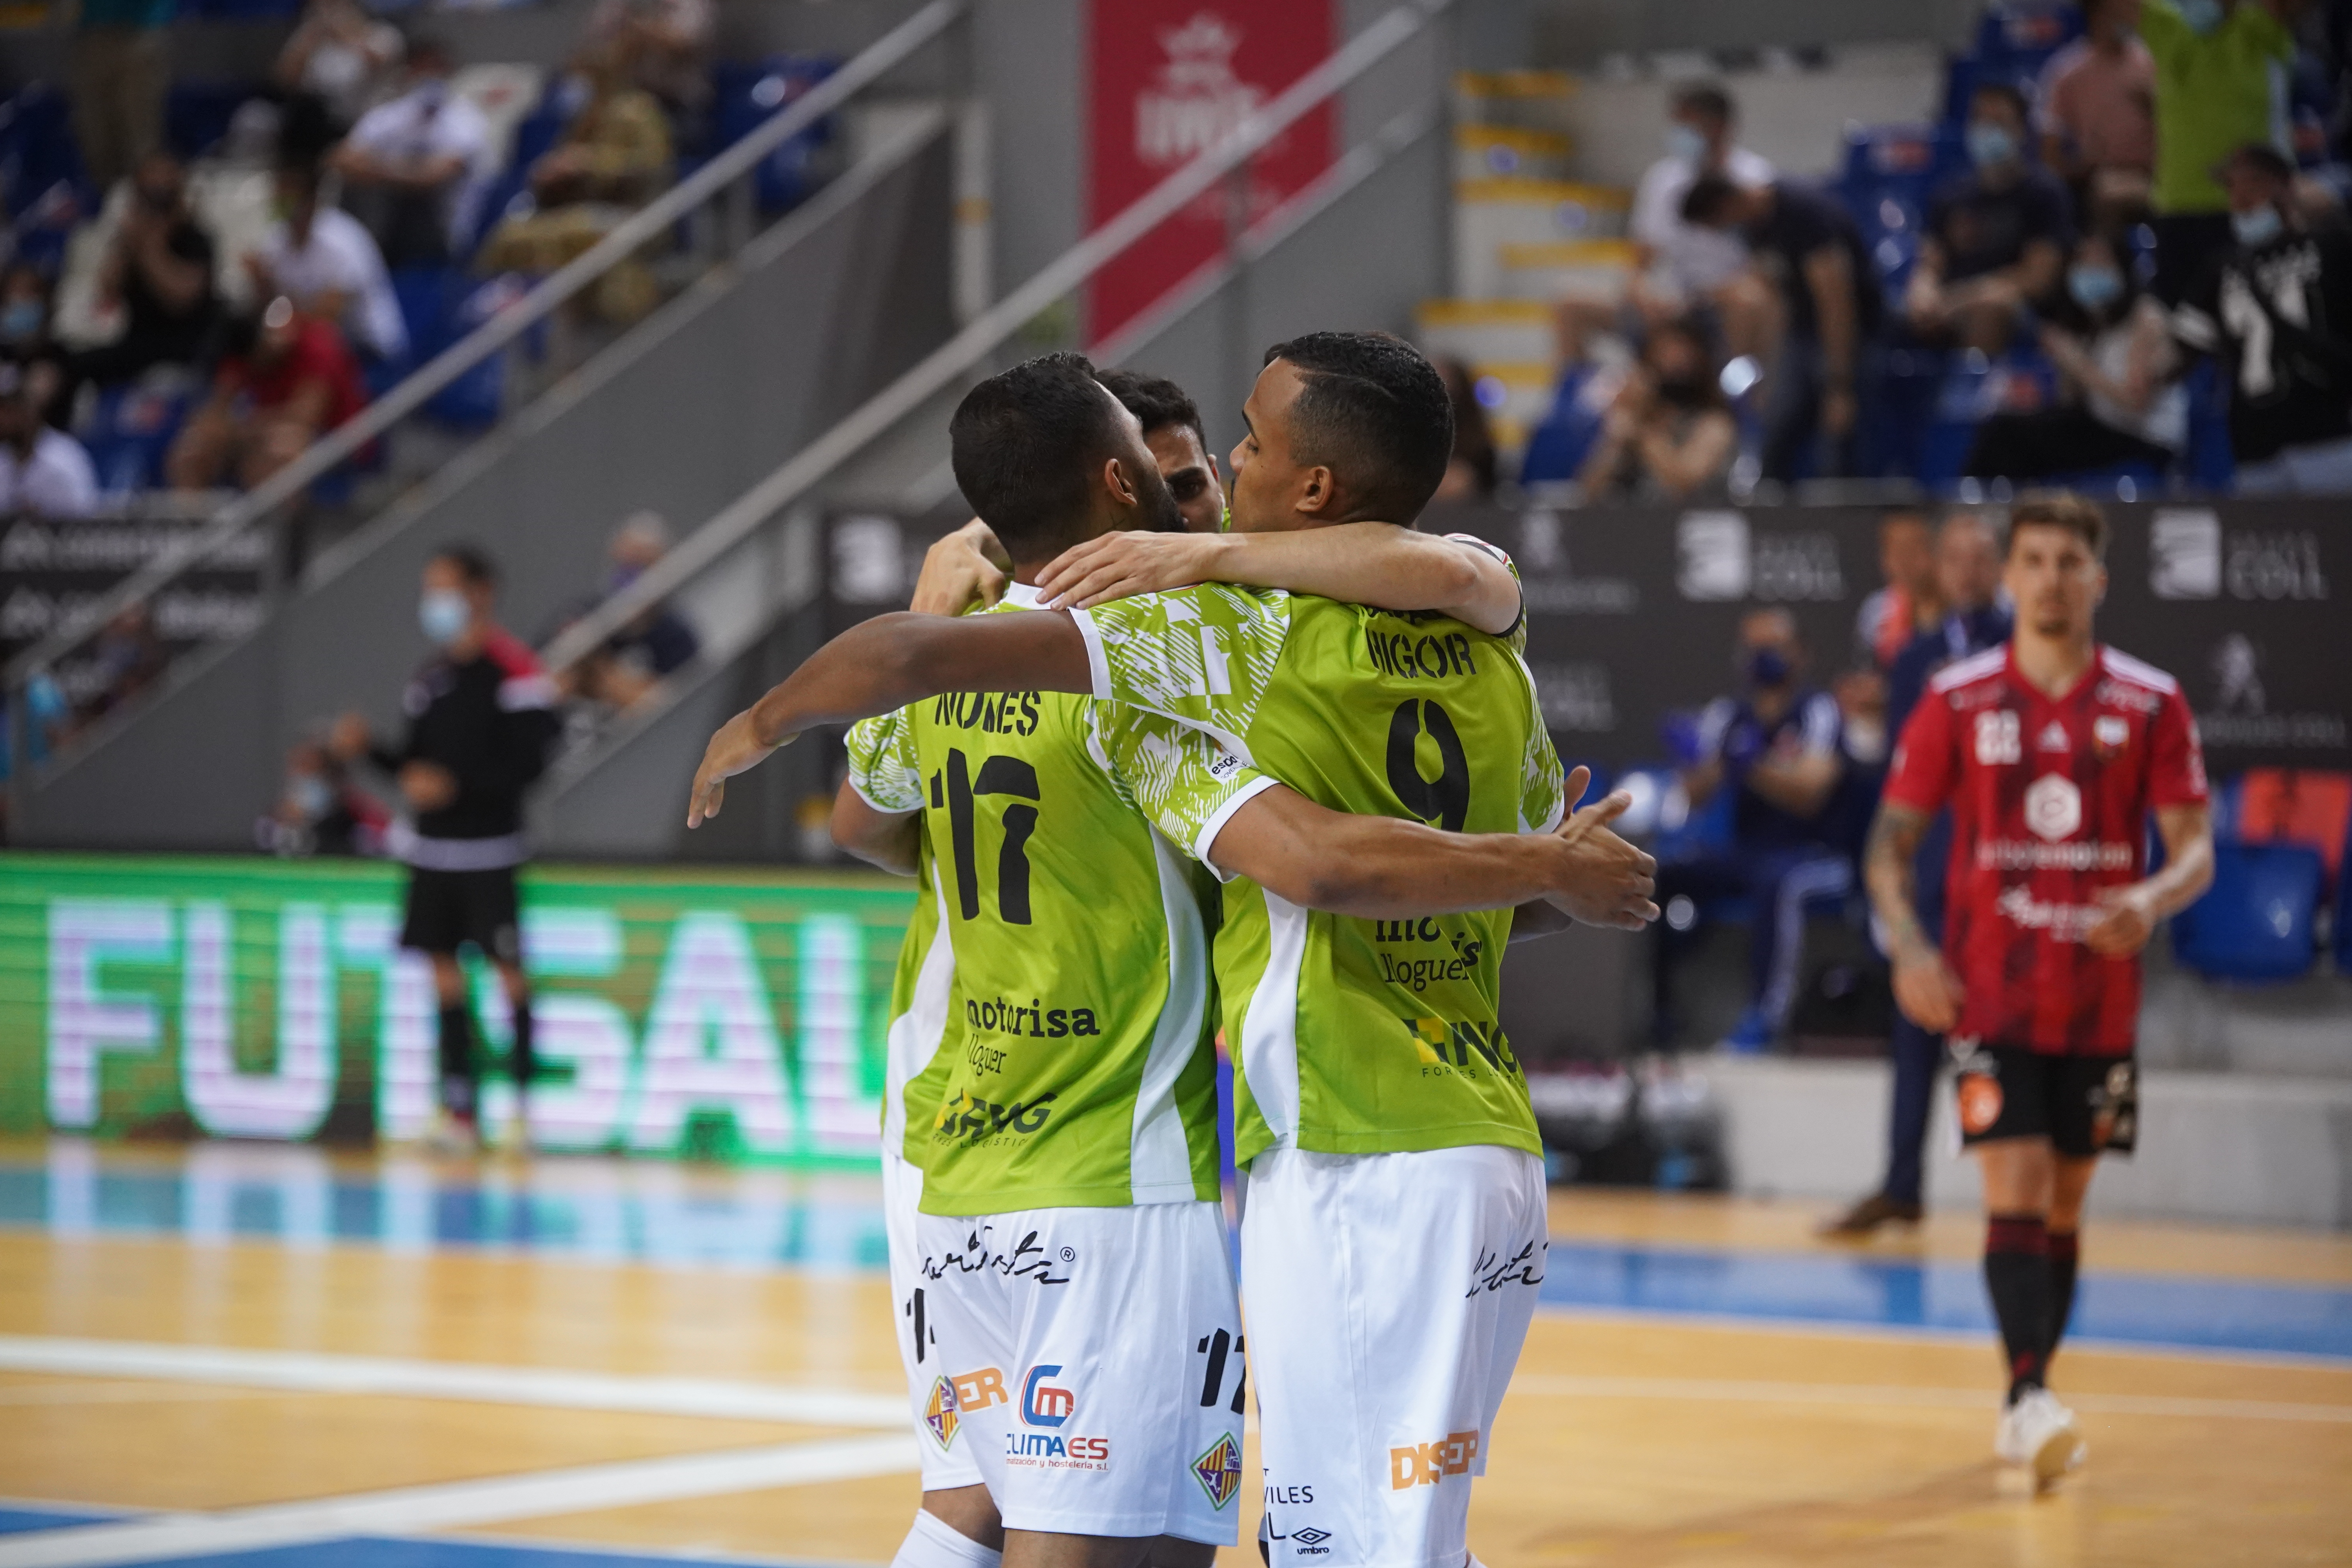 El Palma Futsal torna a golejar el Saragossa a Son Moix i es classifica per a les semifinals del play-off